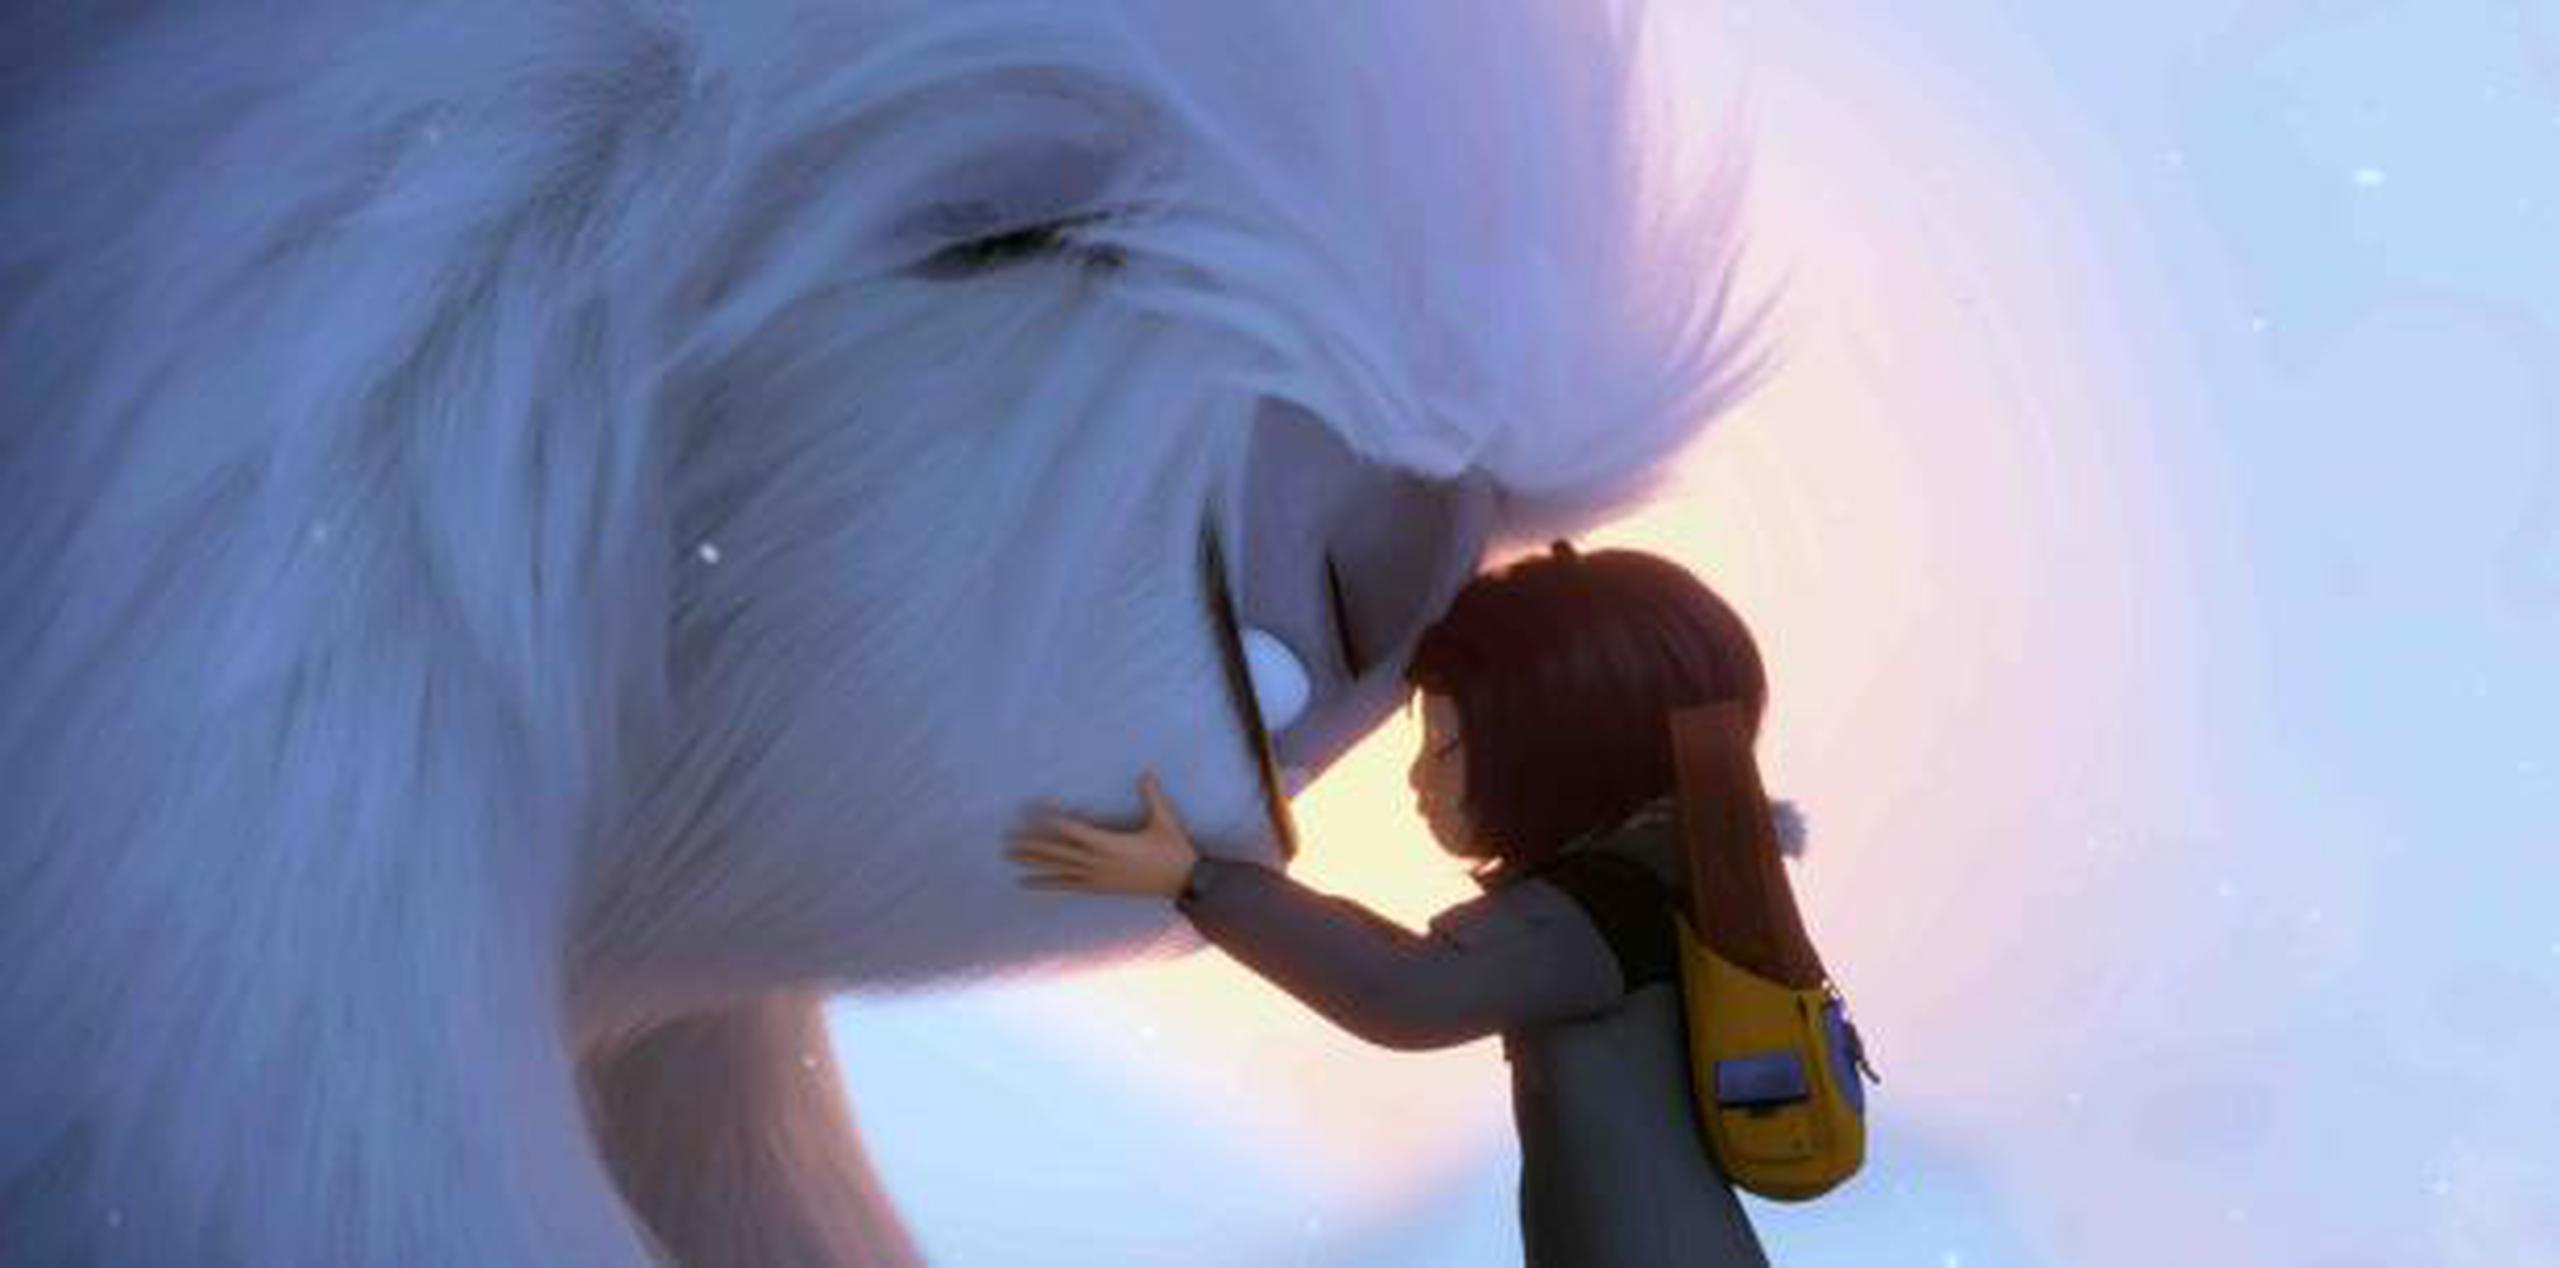 “Abominable” es una producción estadounidense-china entre DreamWorks de Universal y Pearl Studios de China, por lo que su desempeño en el país asiático será fundamental para su éxito. (AP)

